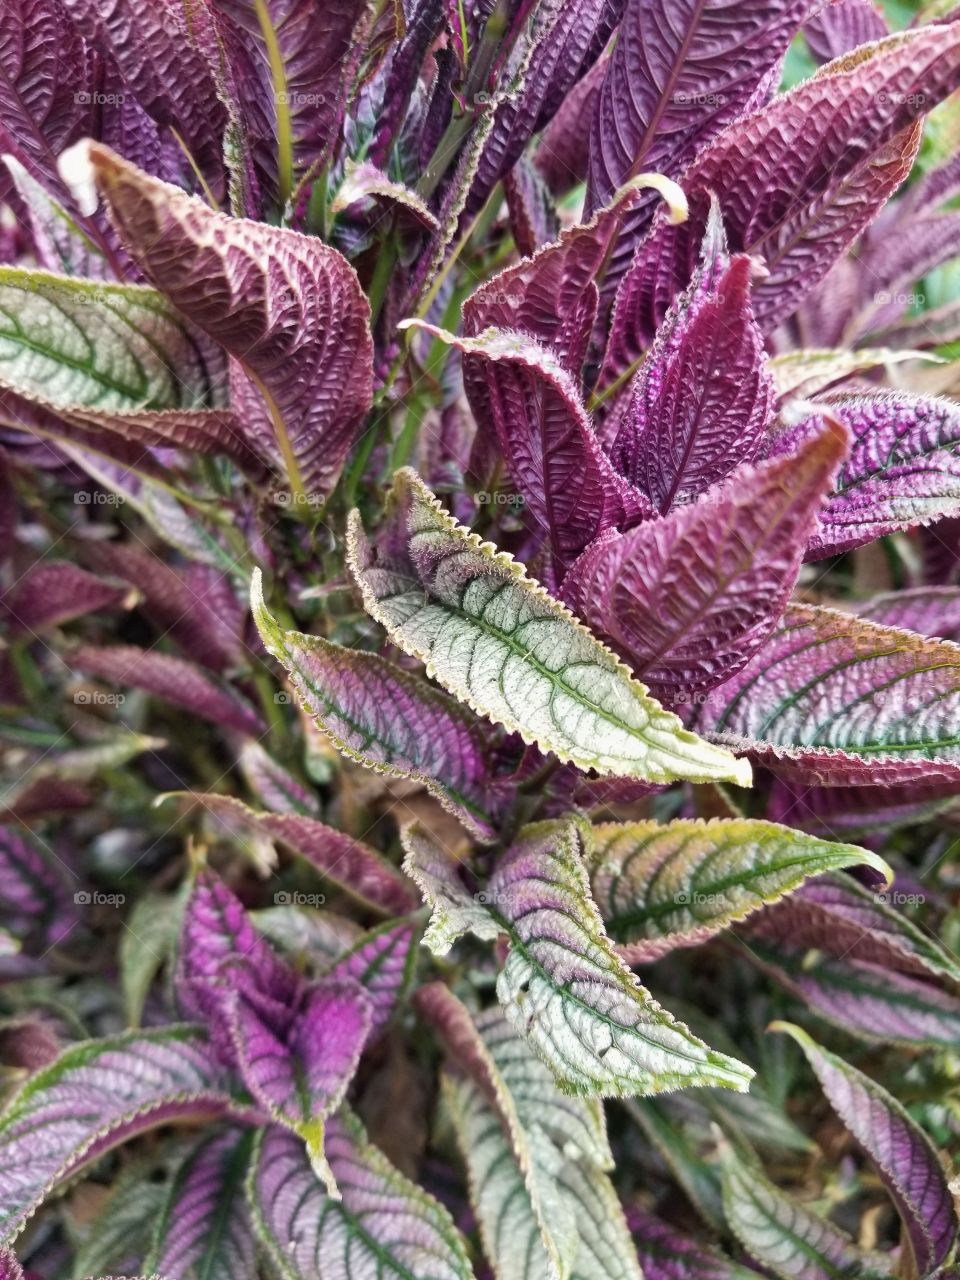 Unique Plants